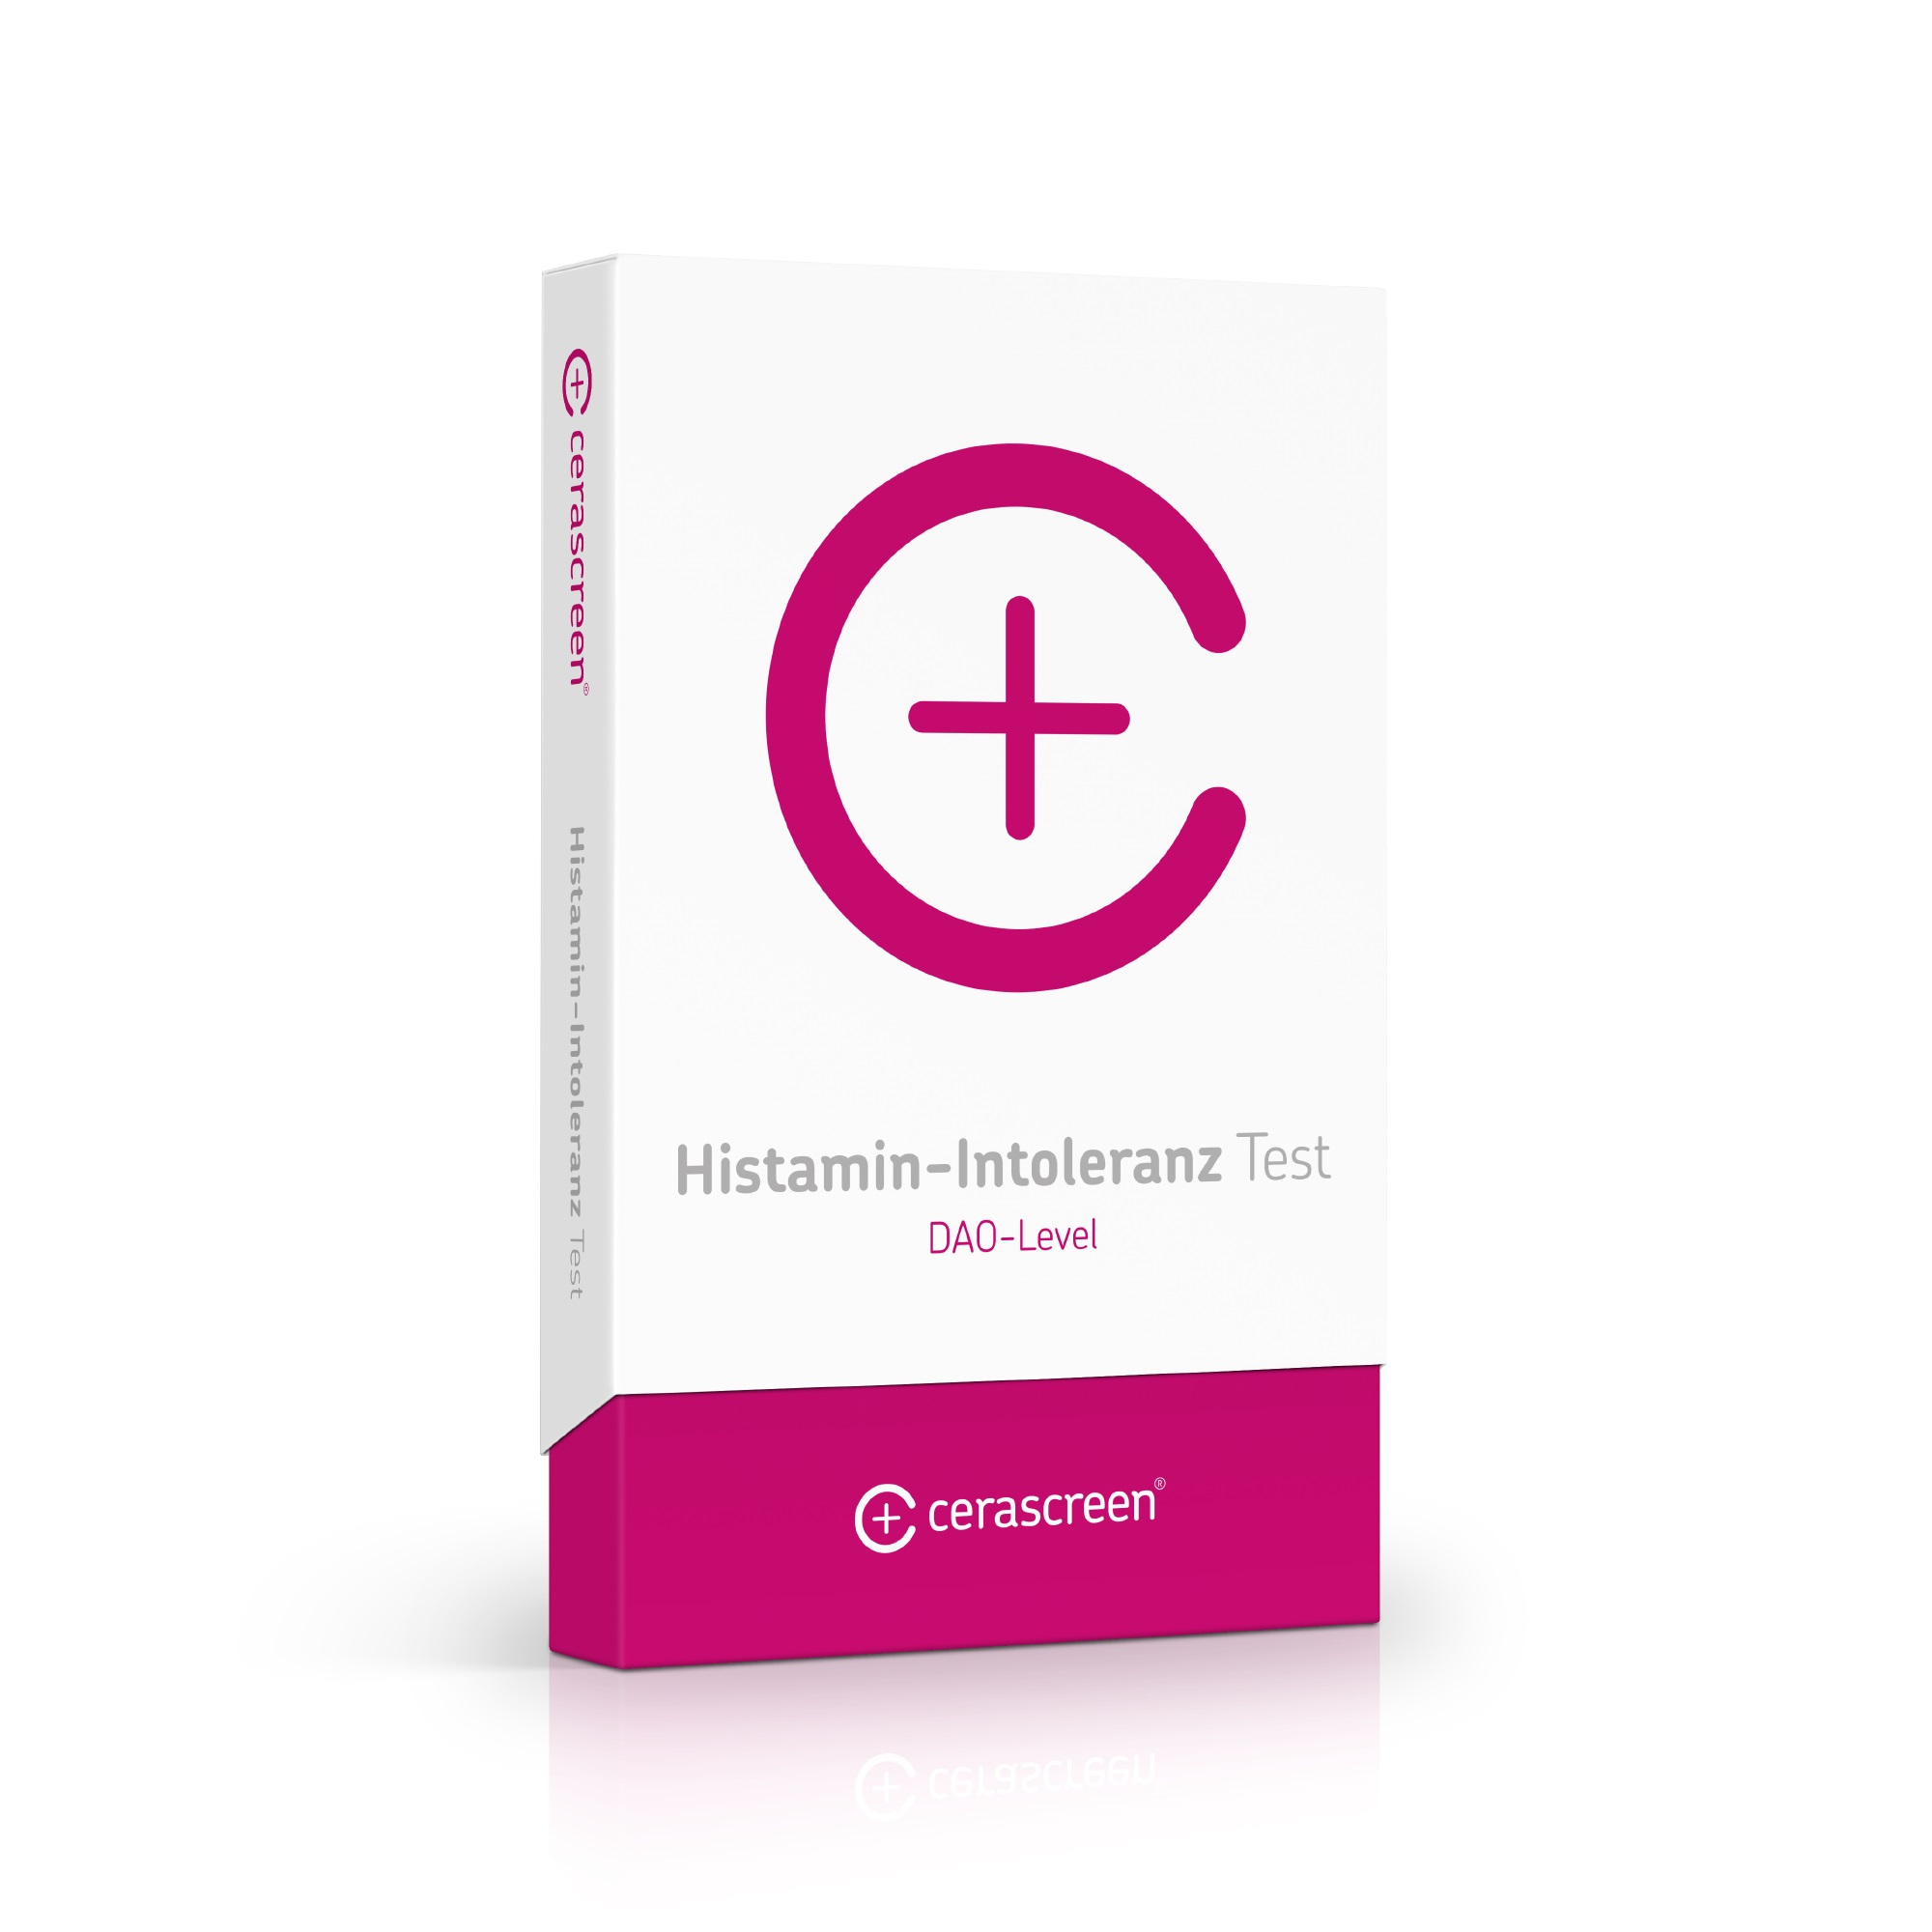 Histamin-Intoleranz Test